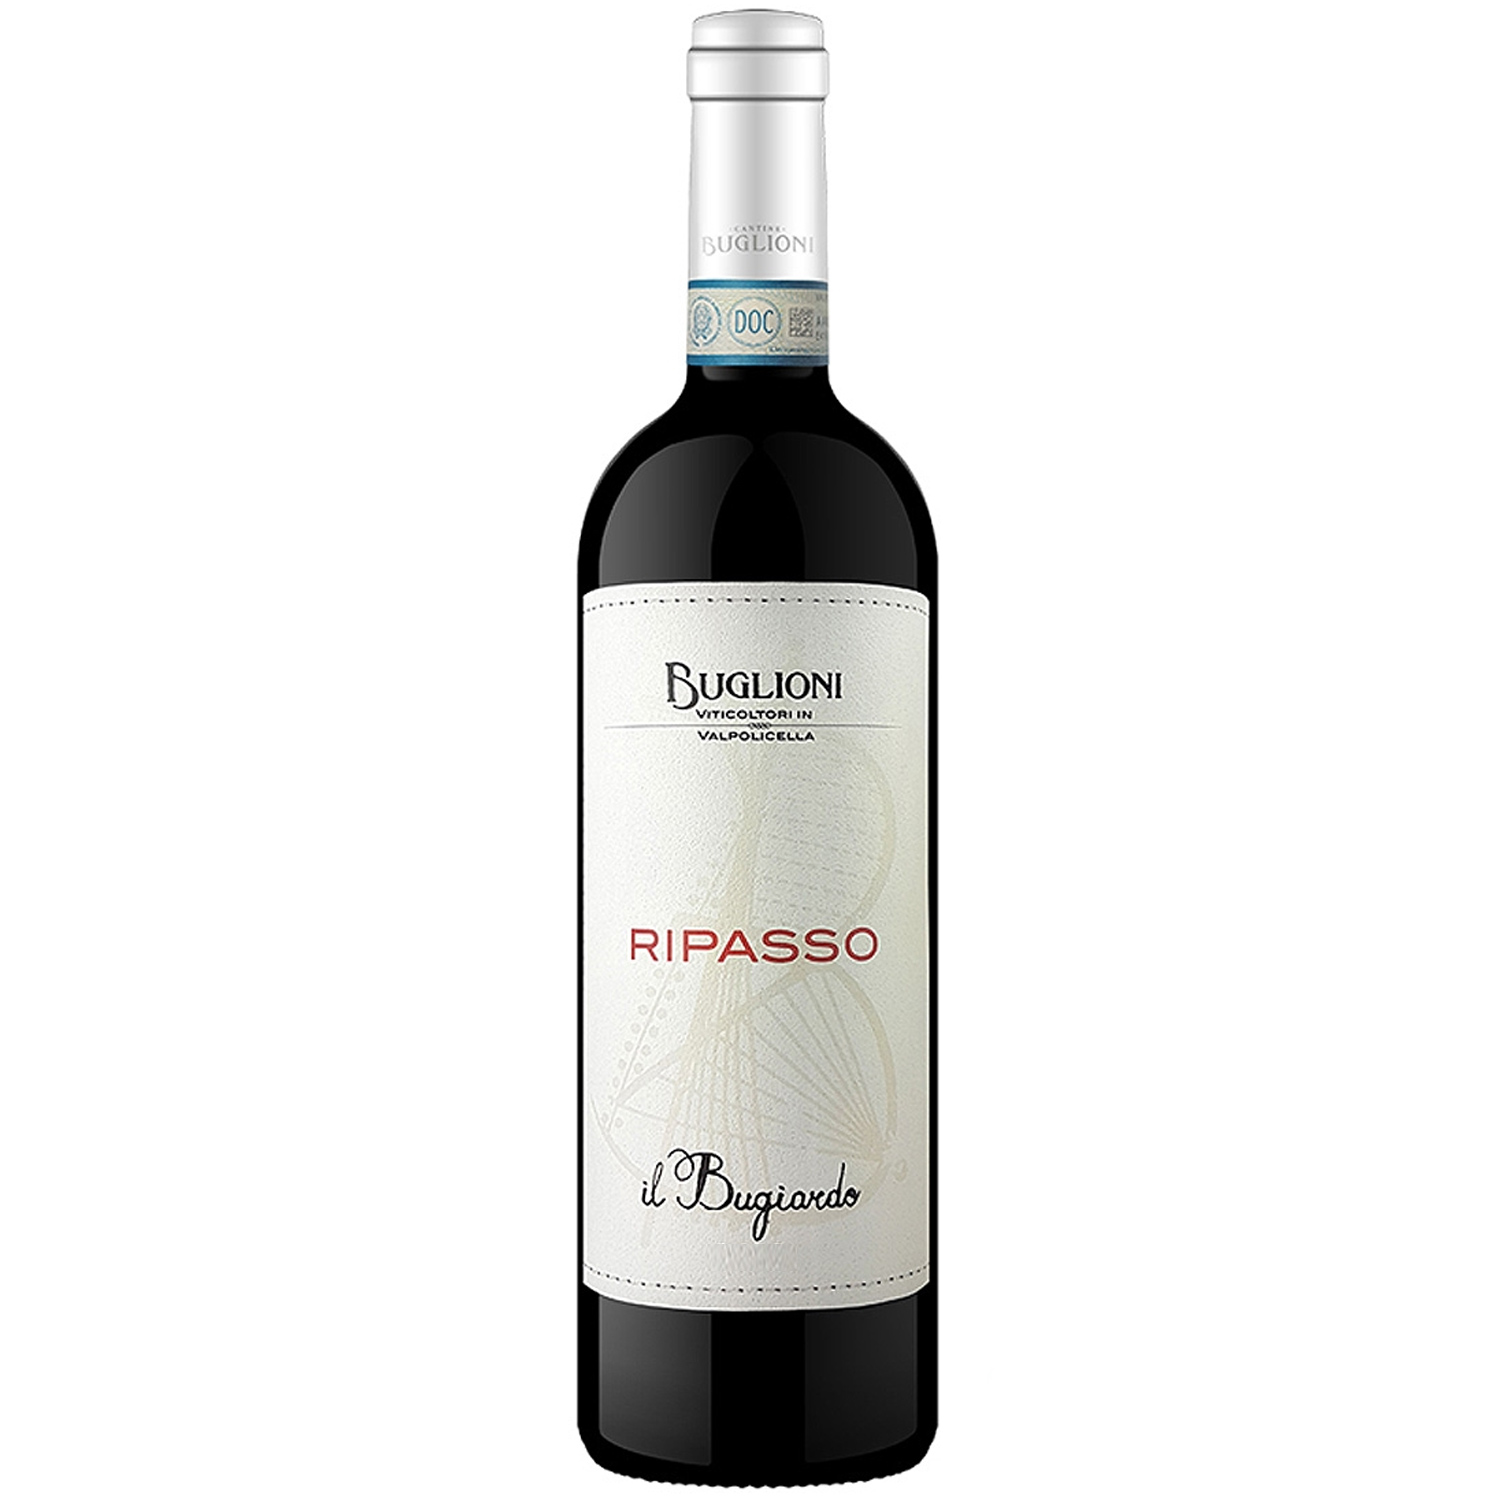 Italienischer Rotwein Buglioni Il Vinum 2018 Nobile Bugiardo Ripasso 